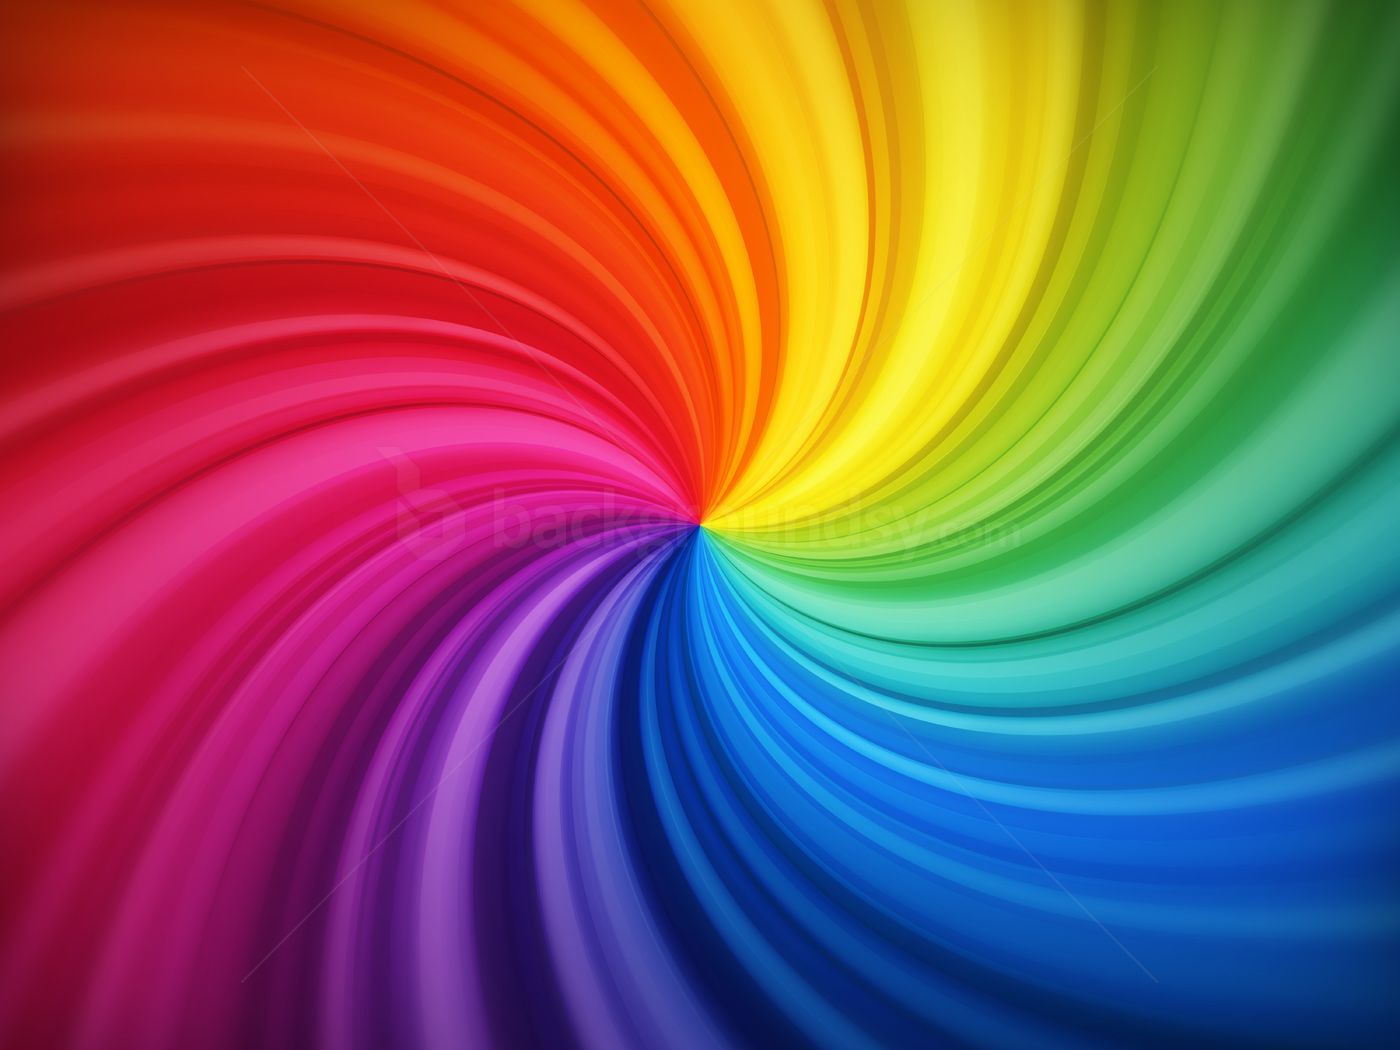 Spiral Rainbow Wallpaper Free Spiral Rainbow Background